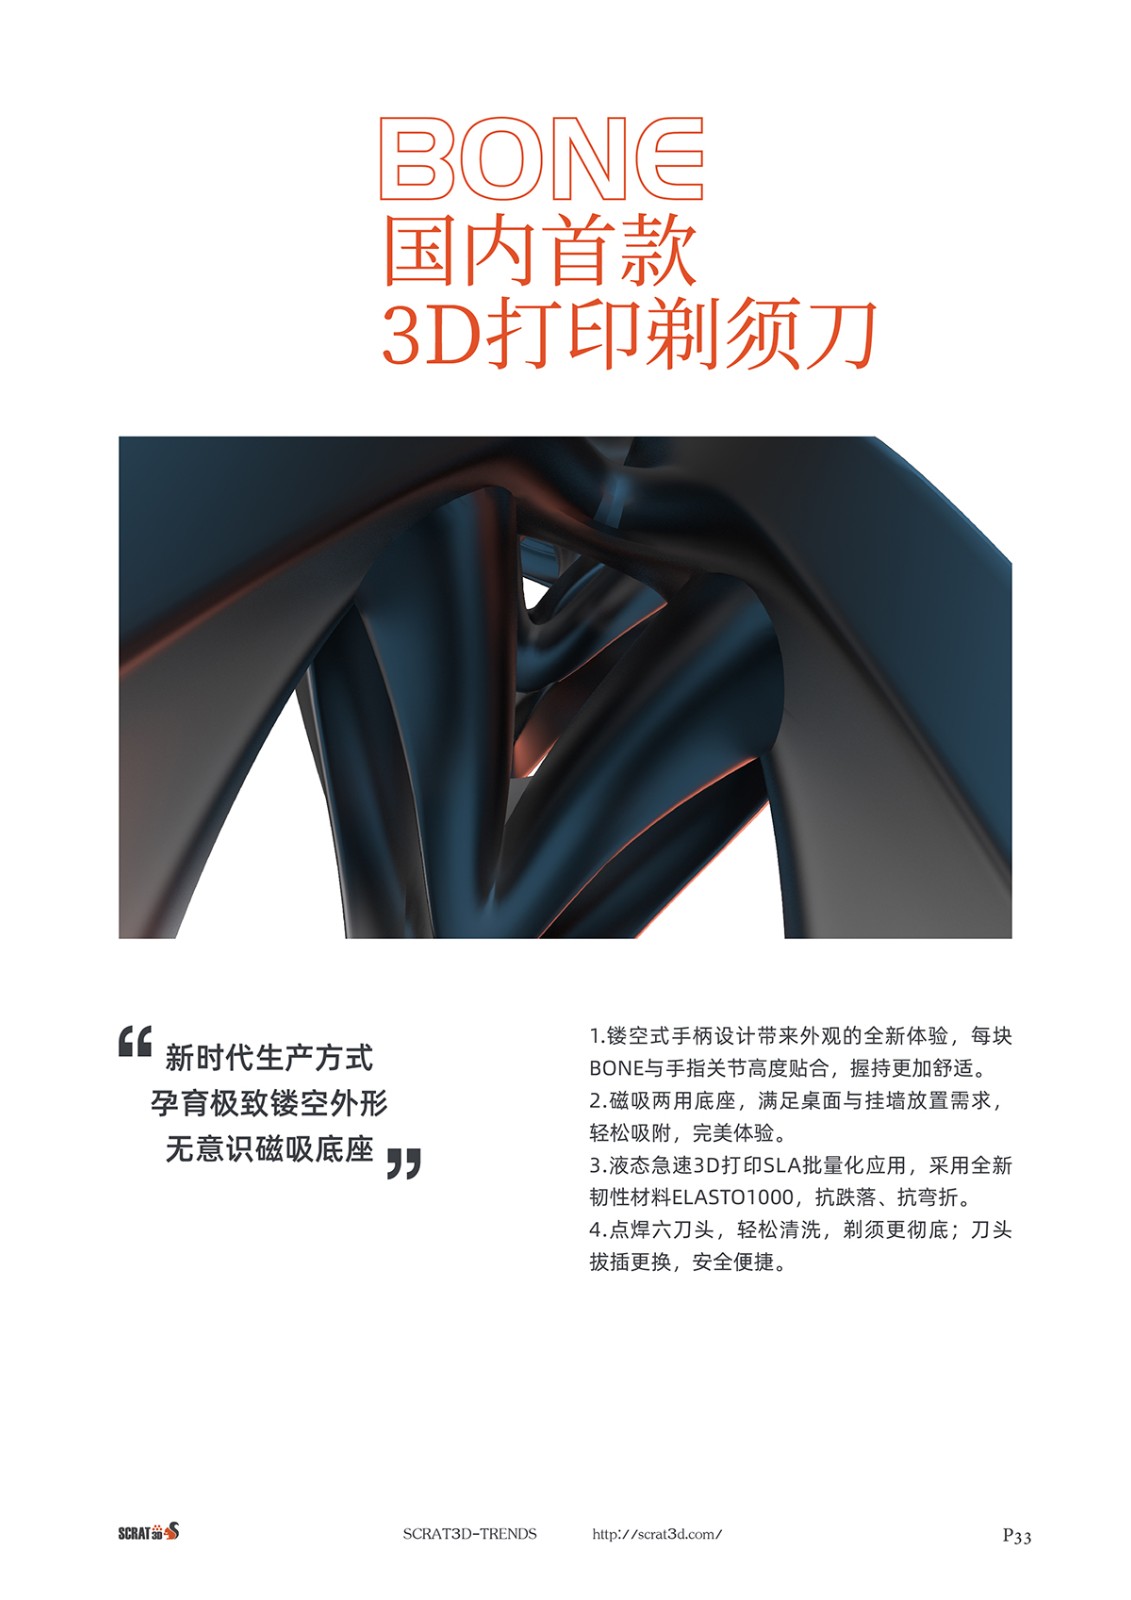 SCRAT3D 報告提前預售 - 預見 2021 | 新趨勢: 3D 打印正在加速產業變革，提升創意新高度！